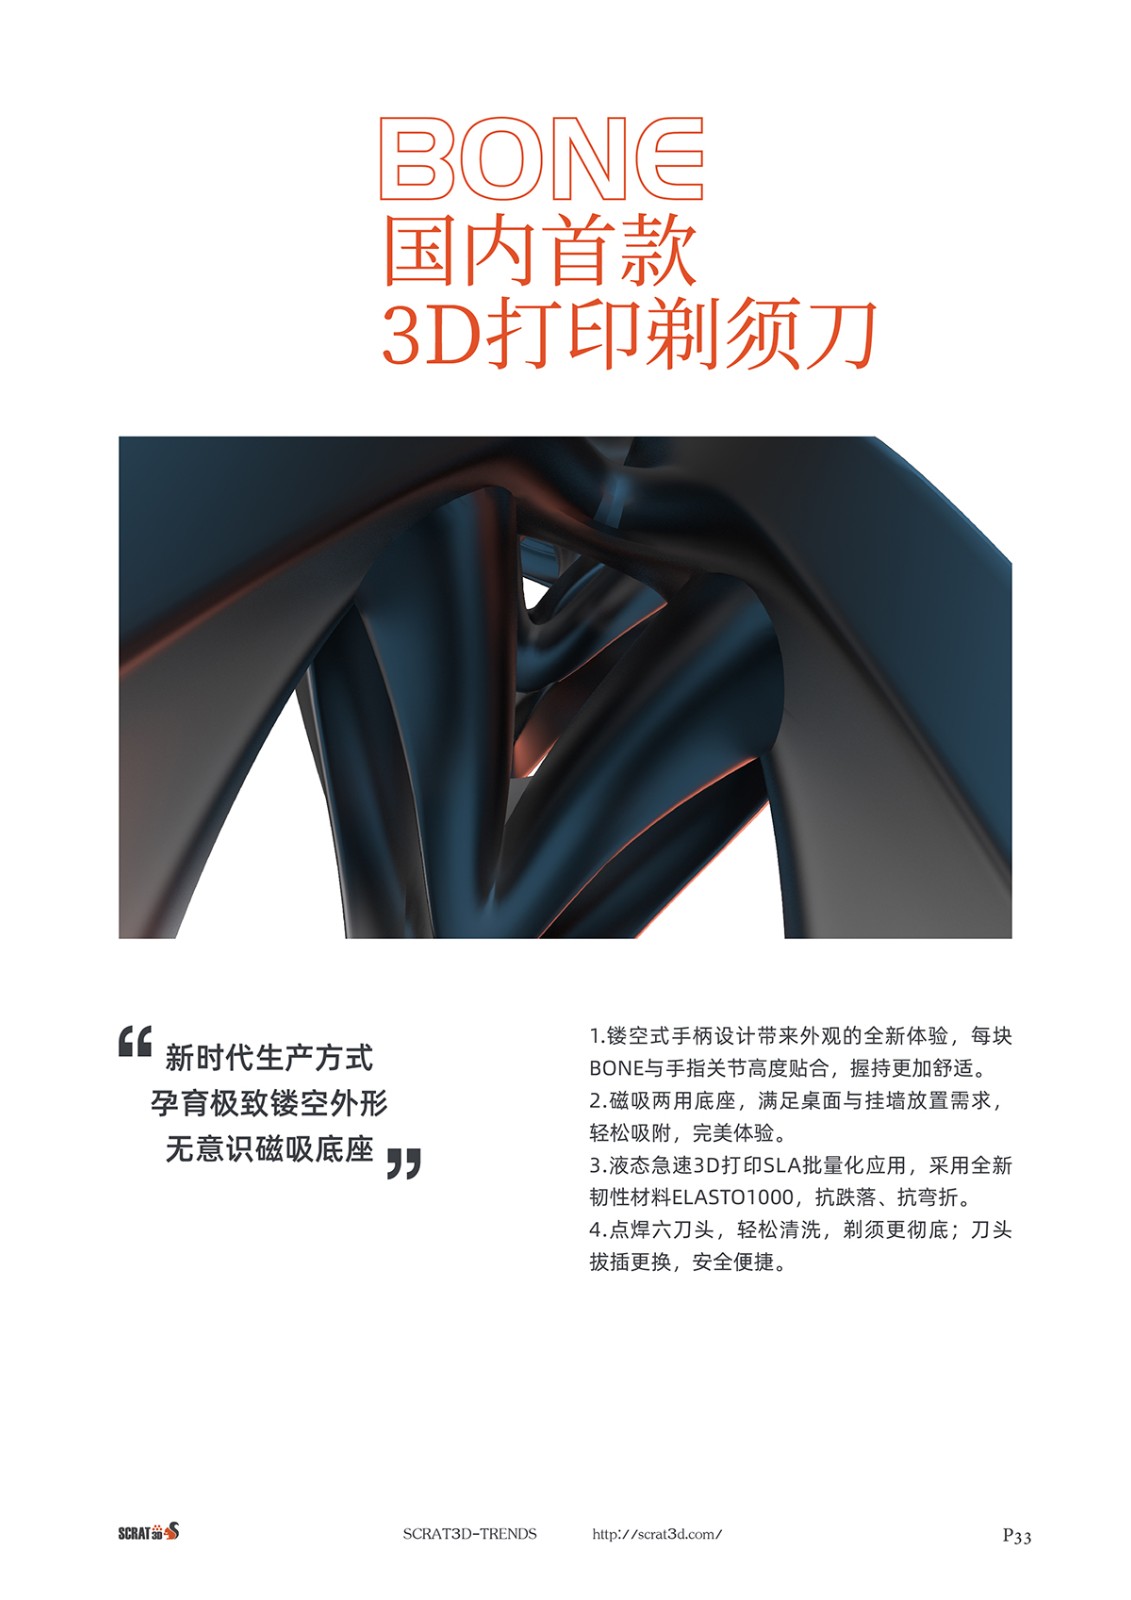 SCRAT3D 報告提前預售 - 預見 2021 | 新趨勢: 3D 打印正在加速產業變革，提升創意新高度！